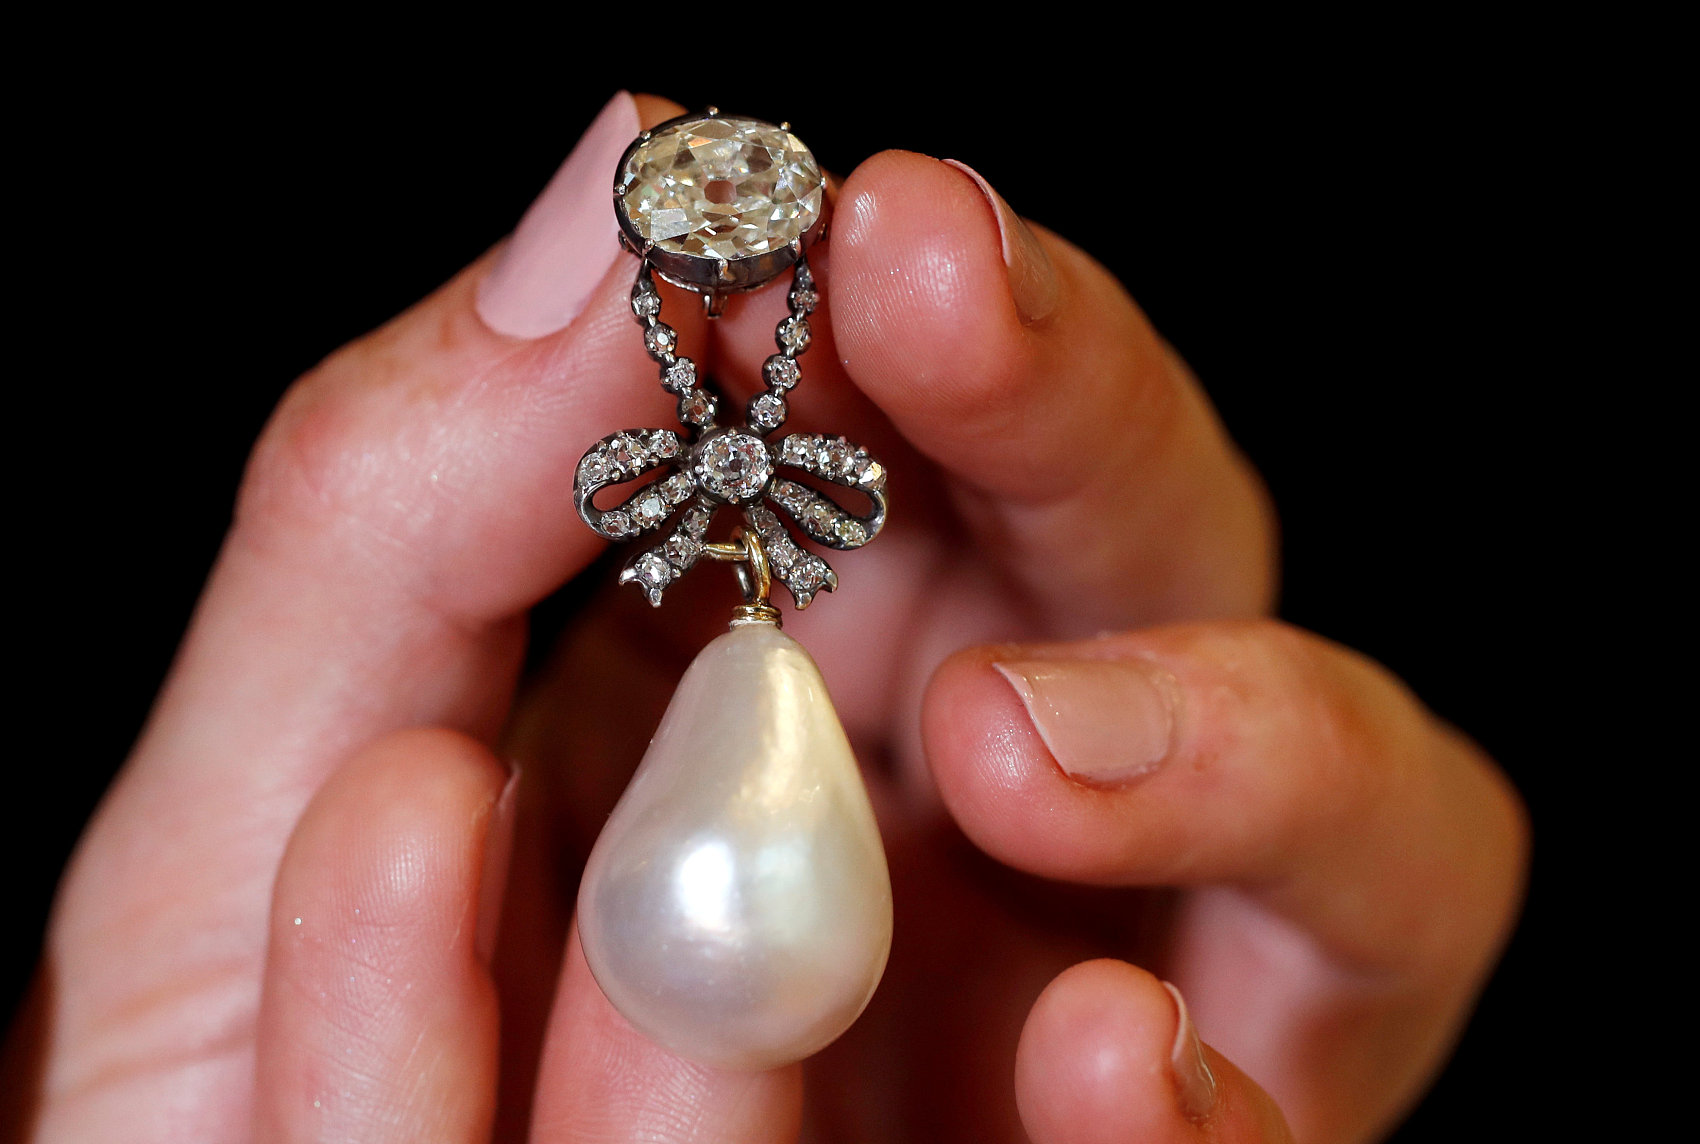 法国王后玛丽·安托瓦内特的珍珠吊坠拍出3600万美元的天价，创下天然珍珠最高纪录